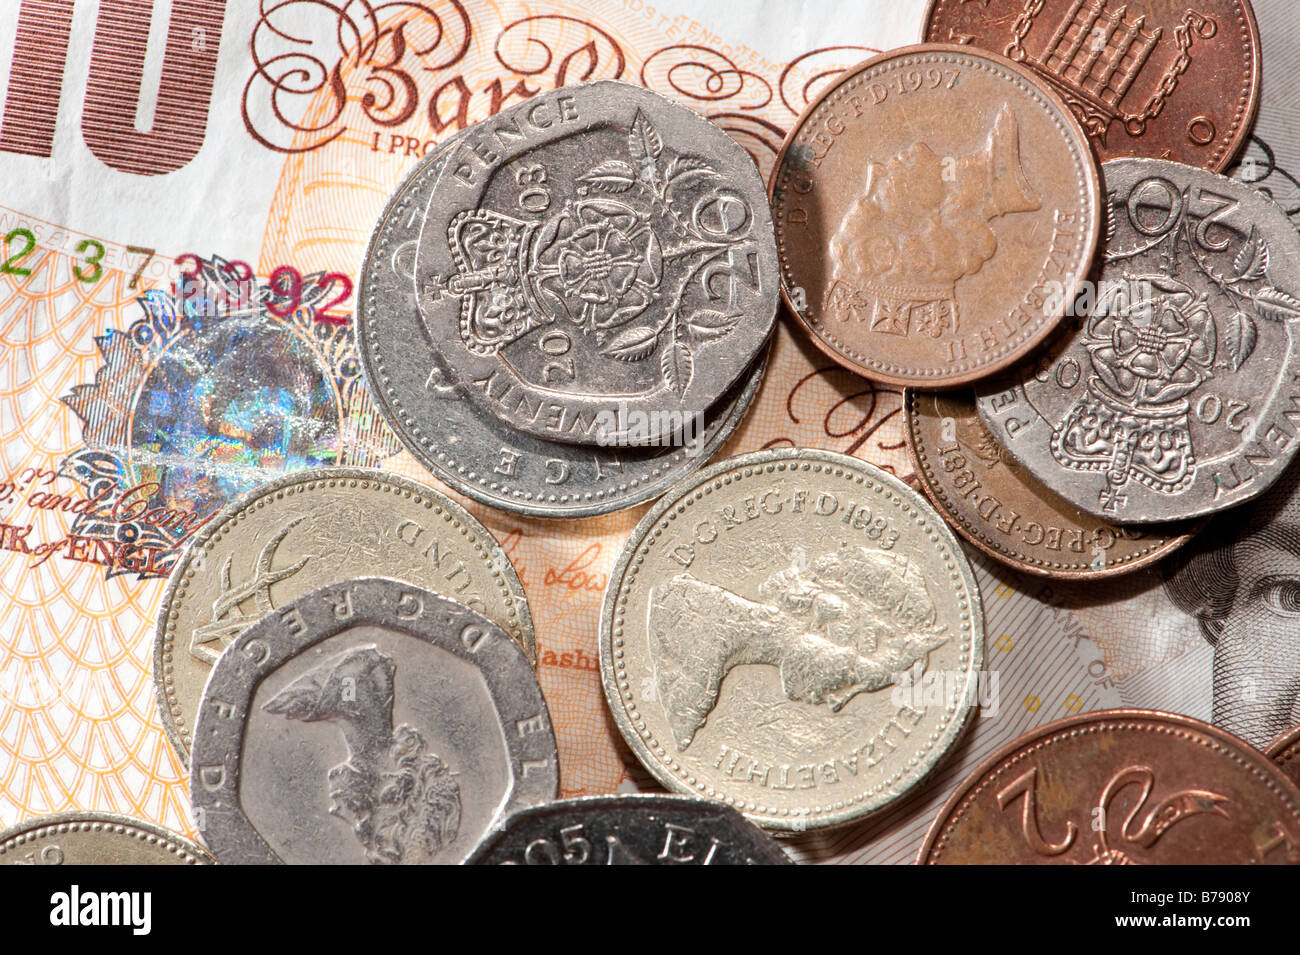 Nota 10 libras británicas y monedas - efectivo en moneda esterlina británica Foto de stock